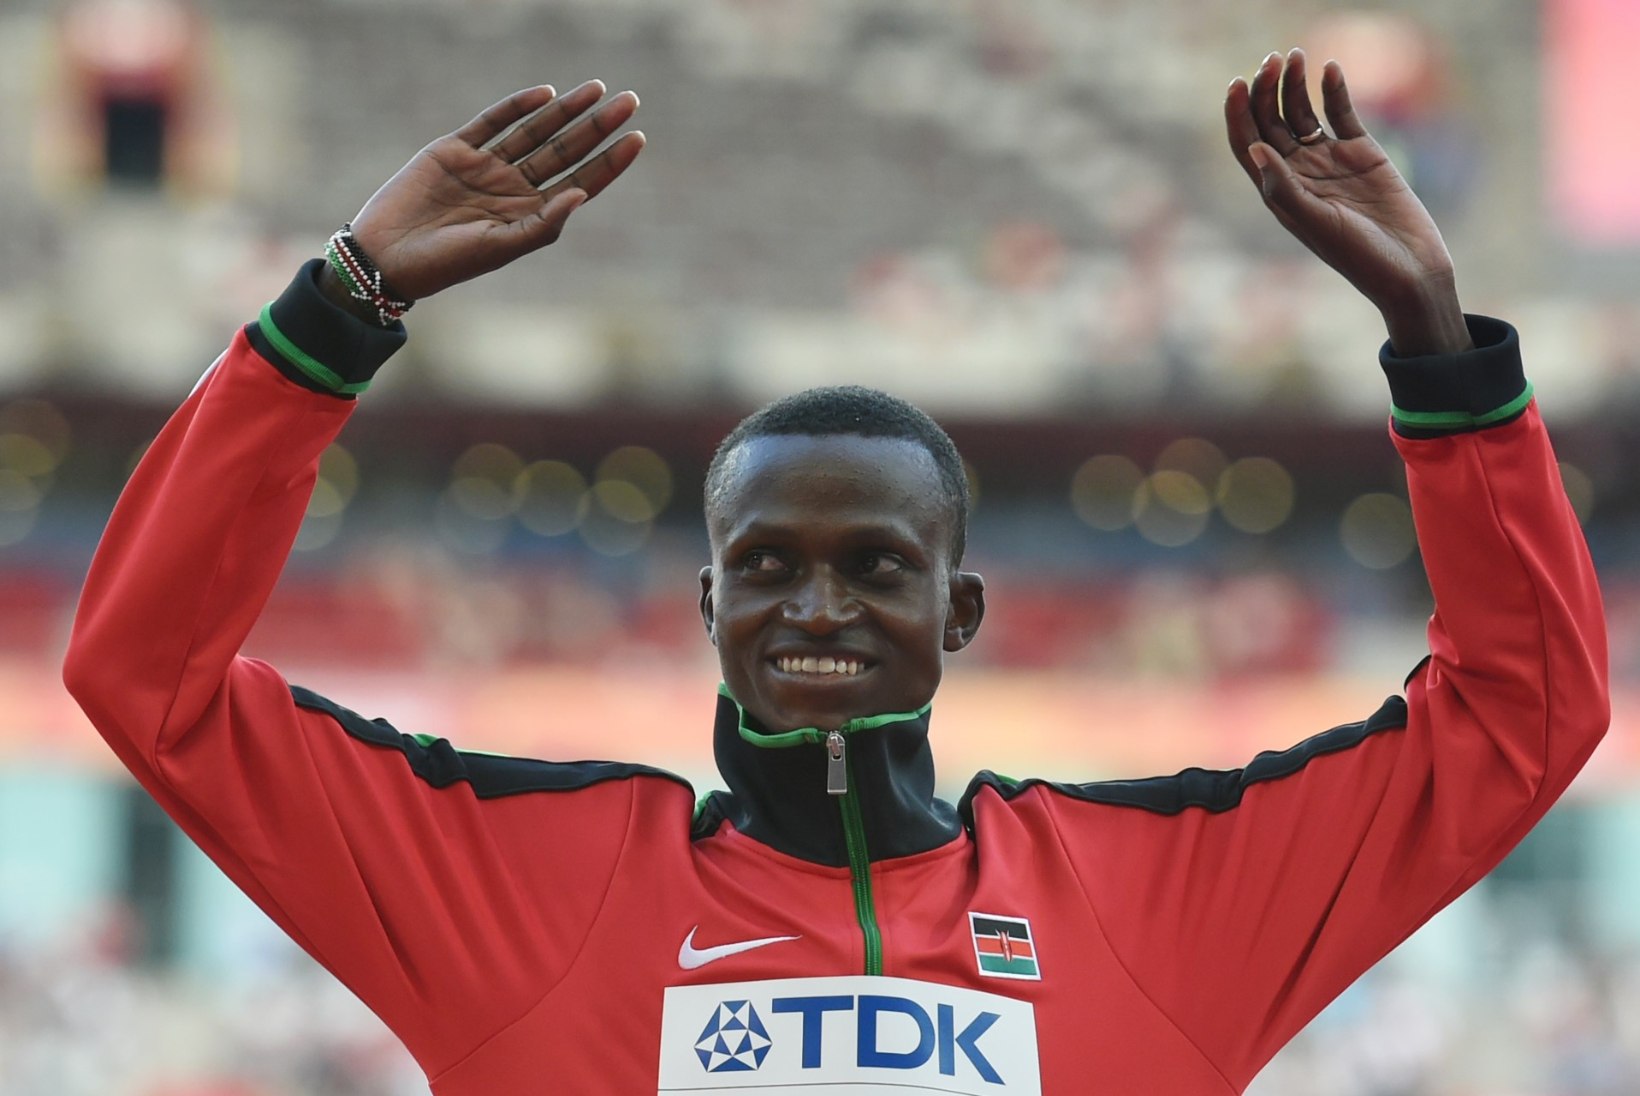 USKUMATULT VÄLE: Keenia jooksja parandas maailmarekordit 17 sekundiga